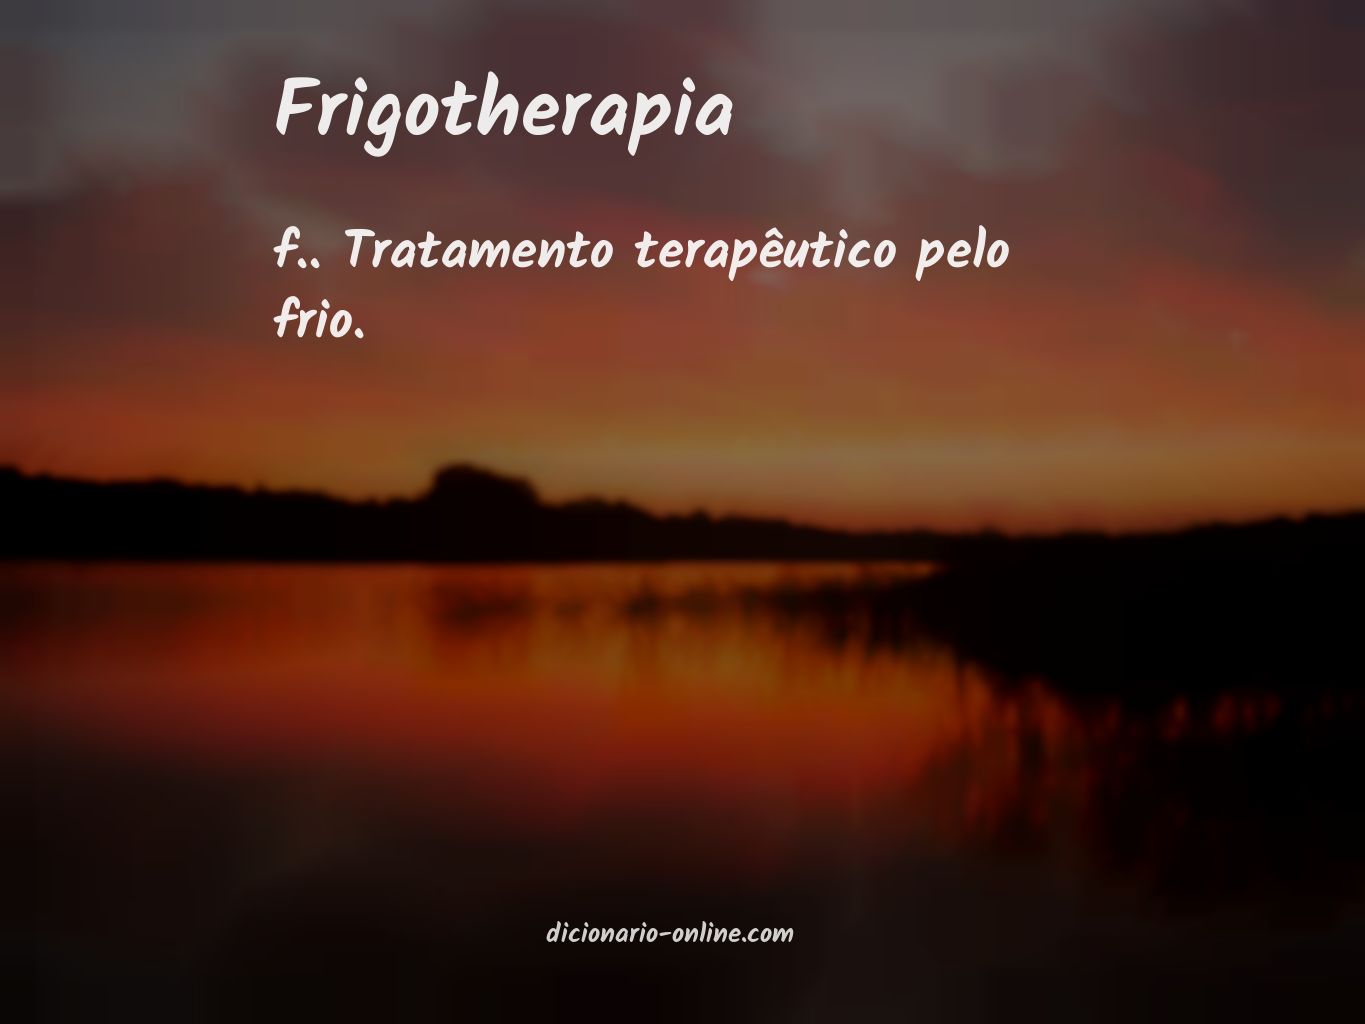 Significado de frigotherapia